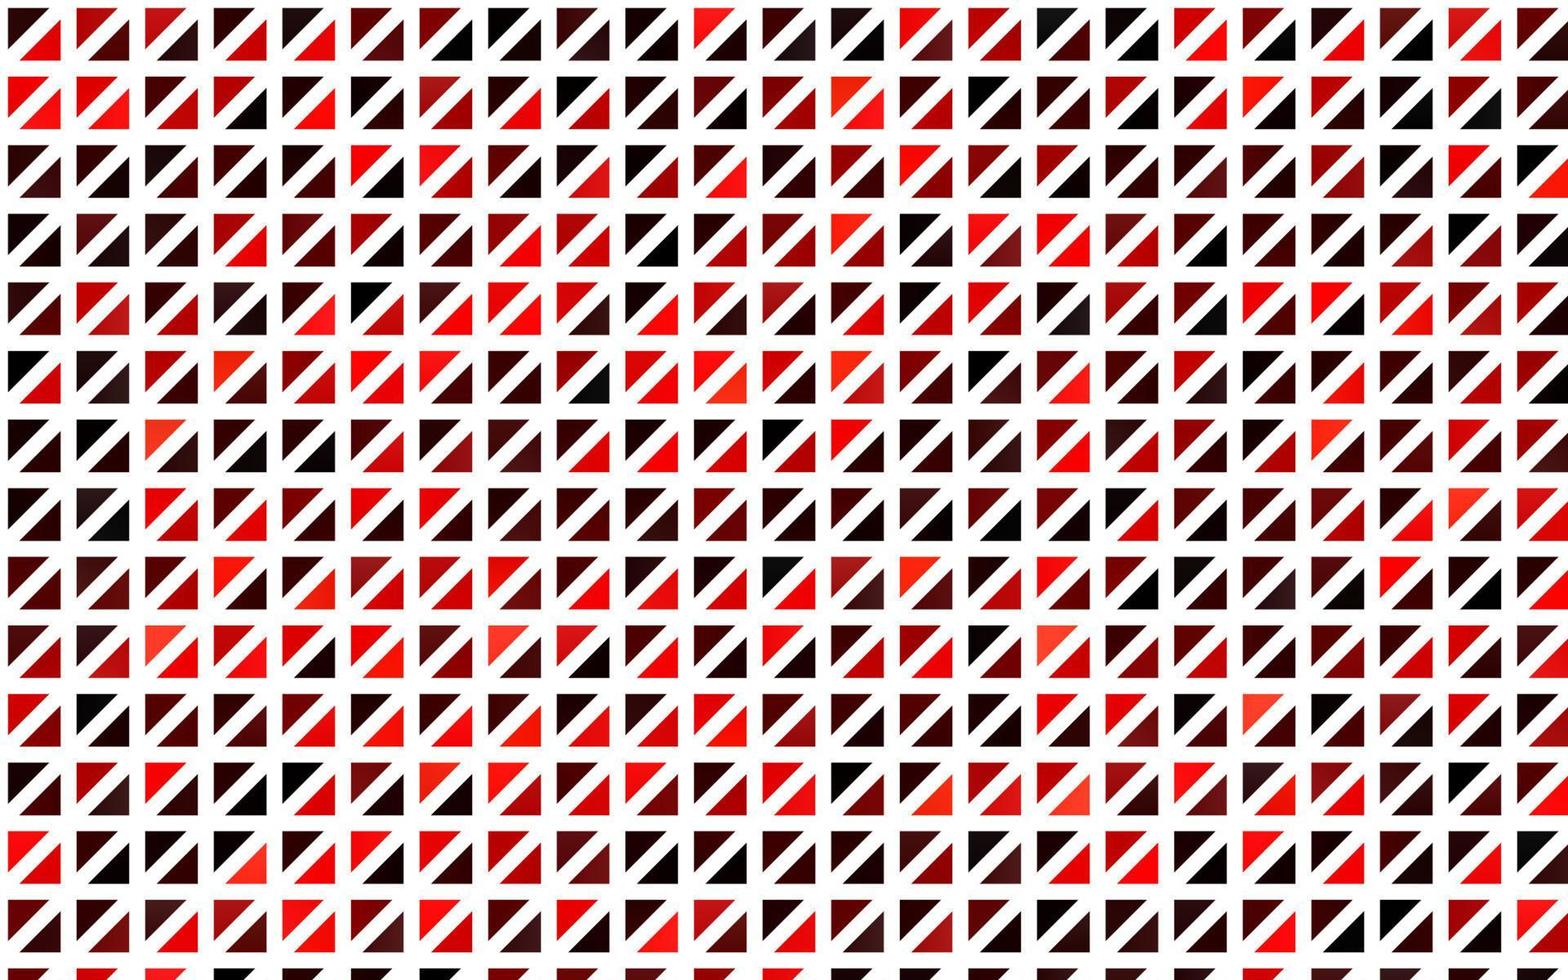 textura de vector rojo claro en estilo triangular.